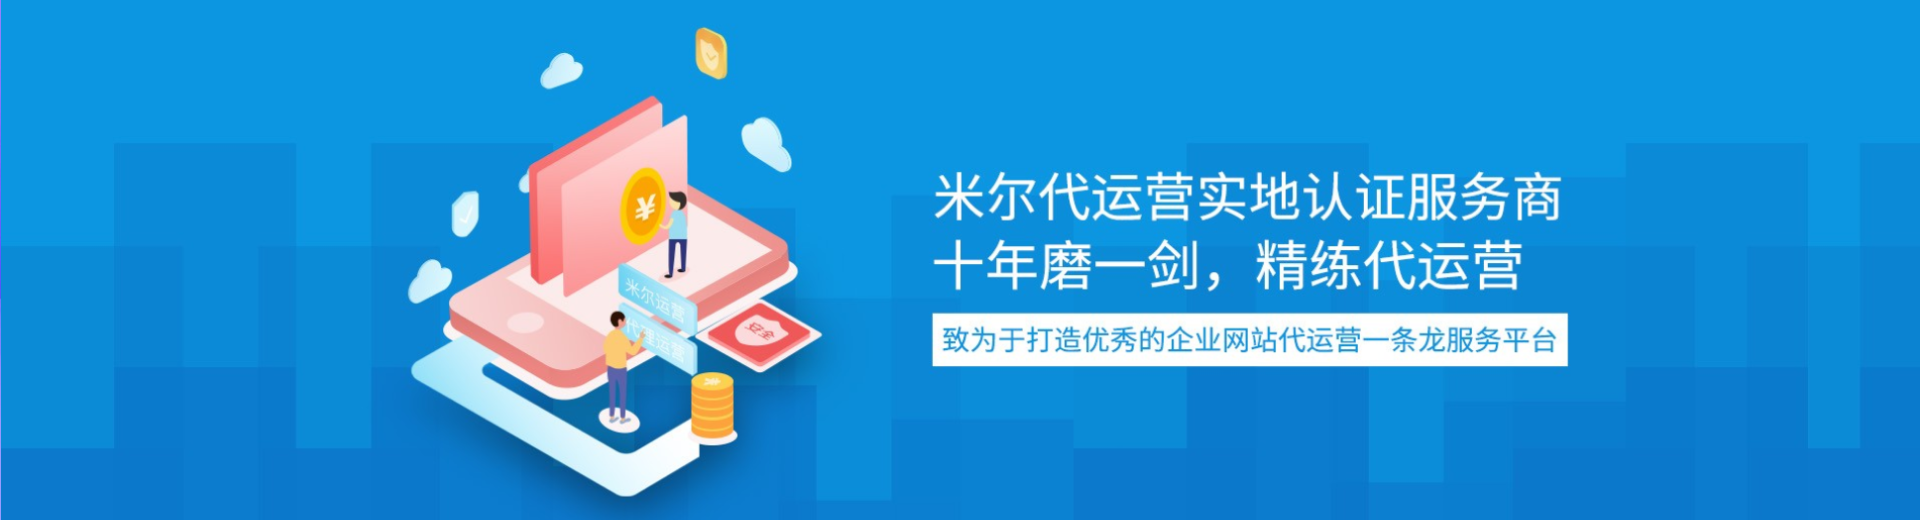 上海网络运营公司响应式网站模板